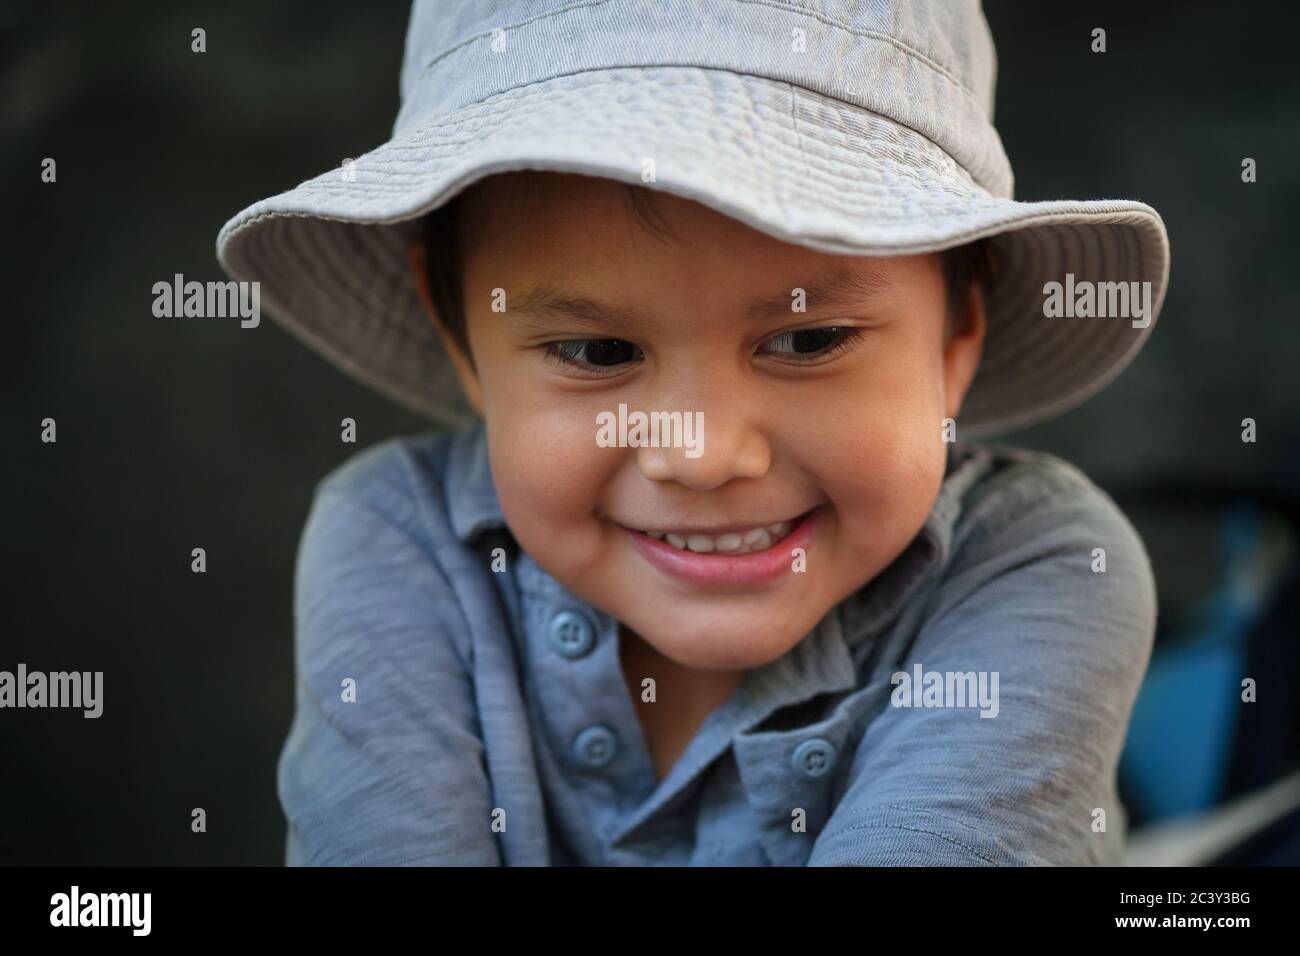 Un niño pequeño con sombrero de pescador y sonriendo, expresando felicidad mientras pescaba. Foto de stock